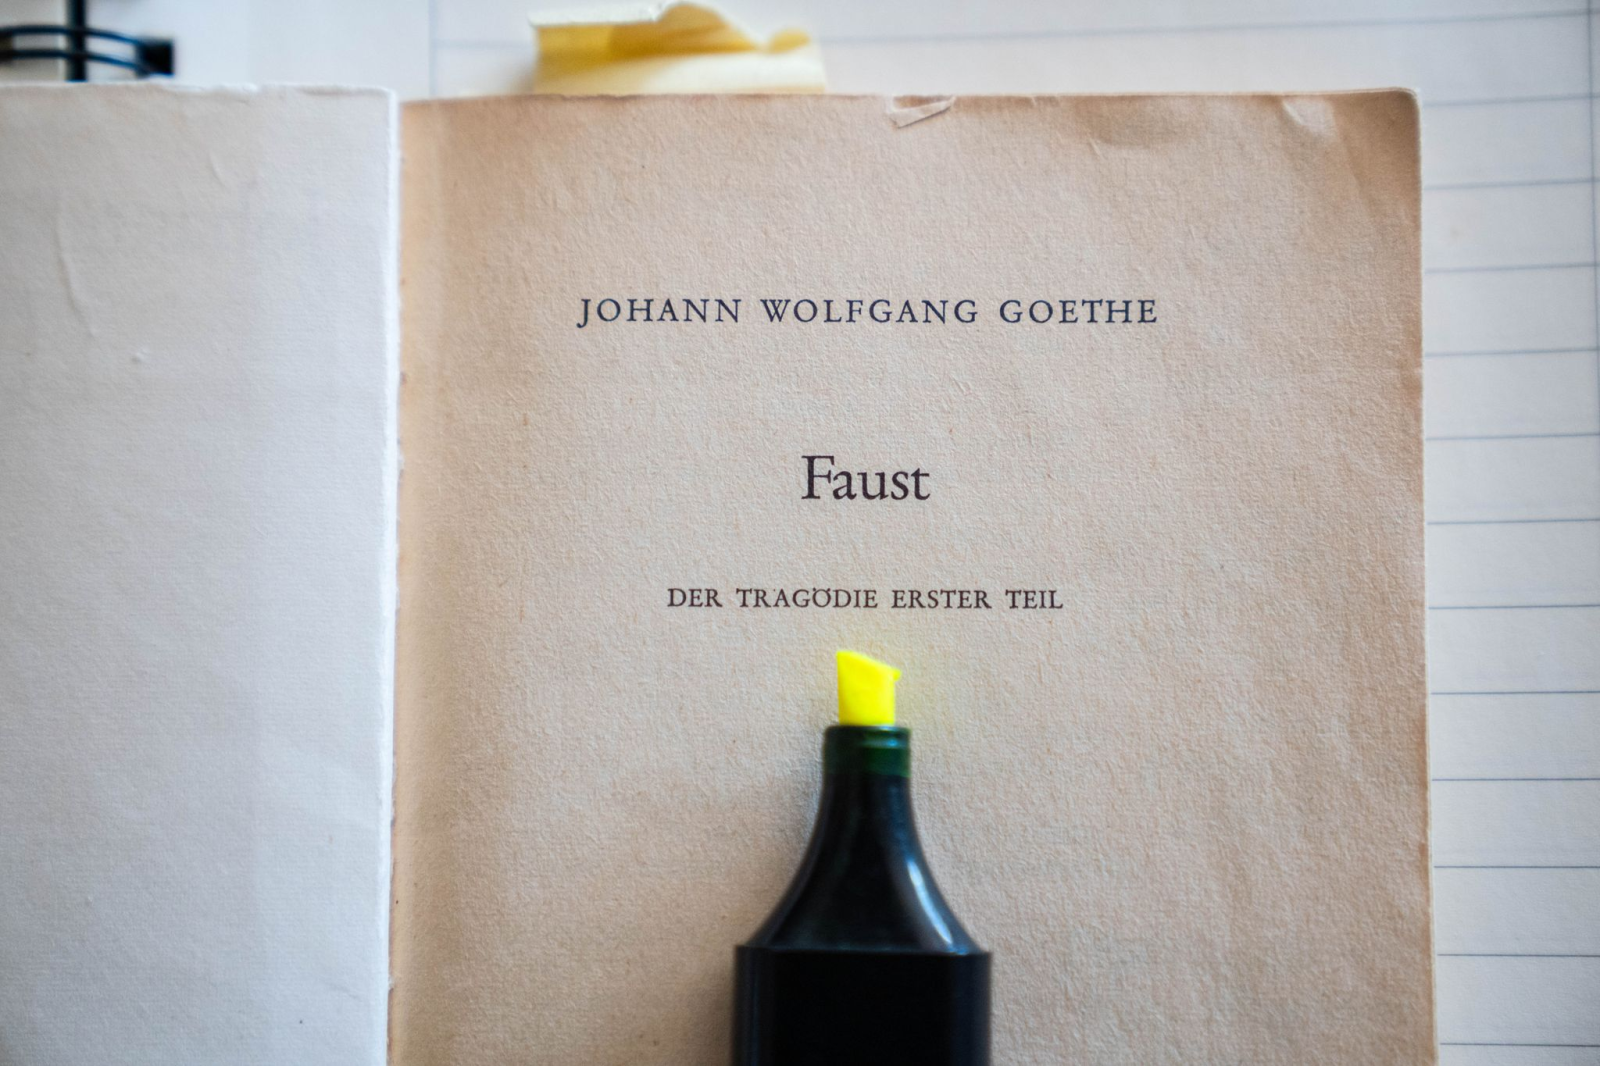 Ein Textmarker liegt auf einer Ausgabe der Tragödie „Faust - Der Tragödie erster Teil“ von Johann Wolfang Goethe.